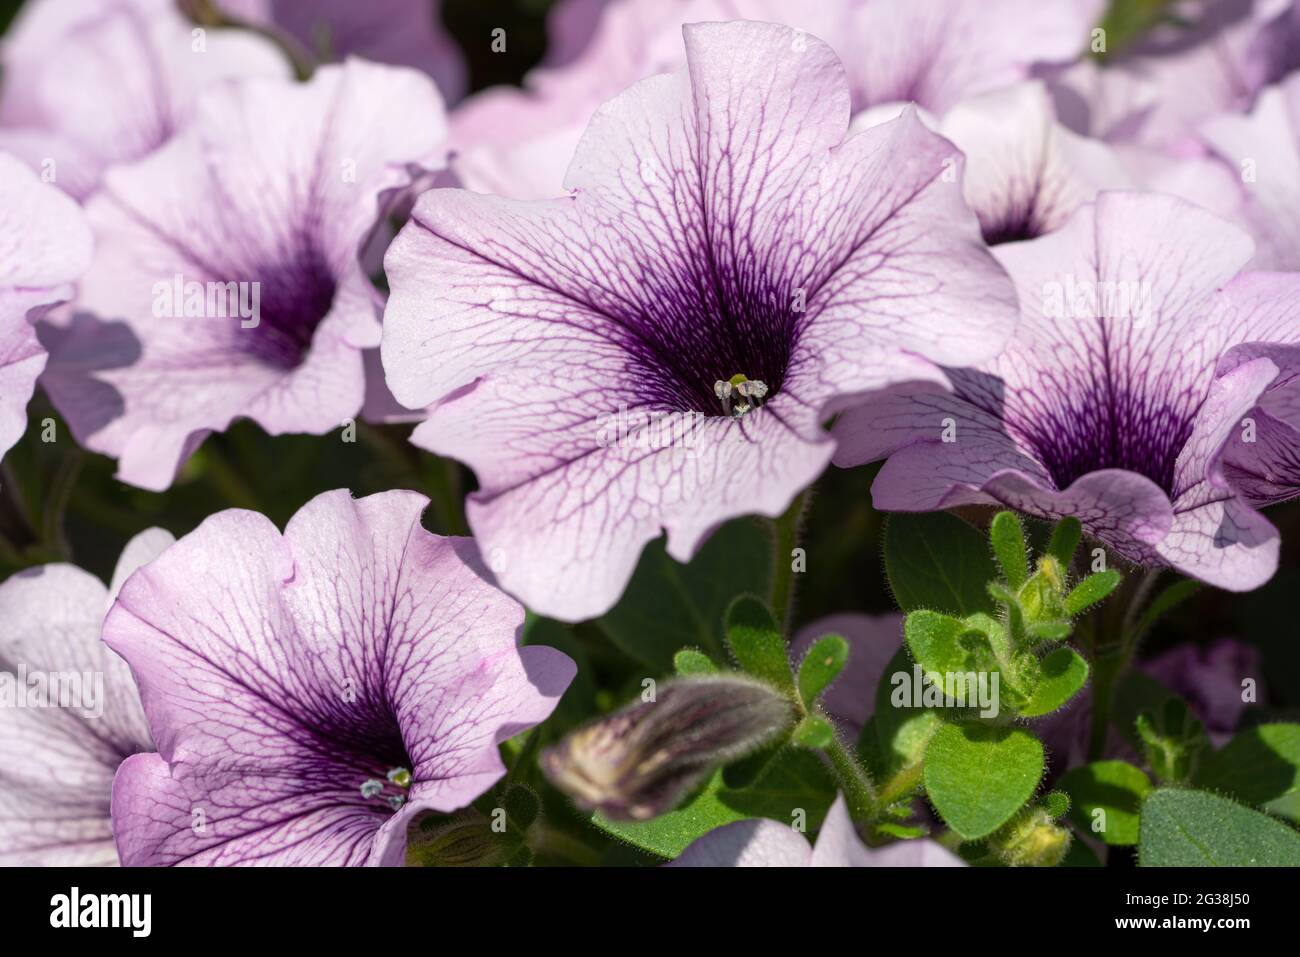 Close up image of Garden Petunia (Petunia hybrida) Stock Photo